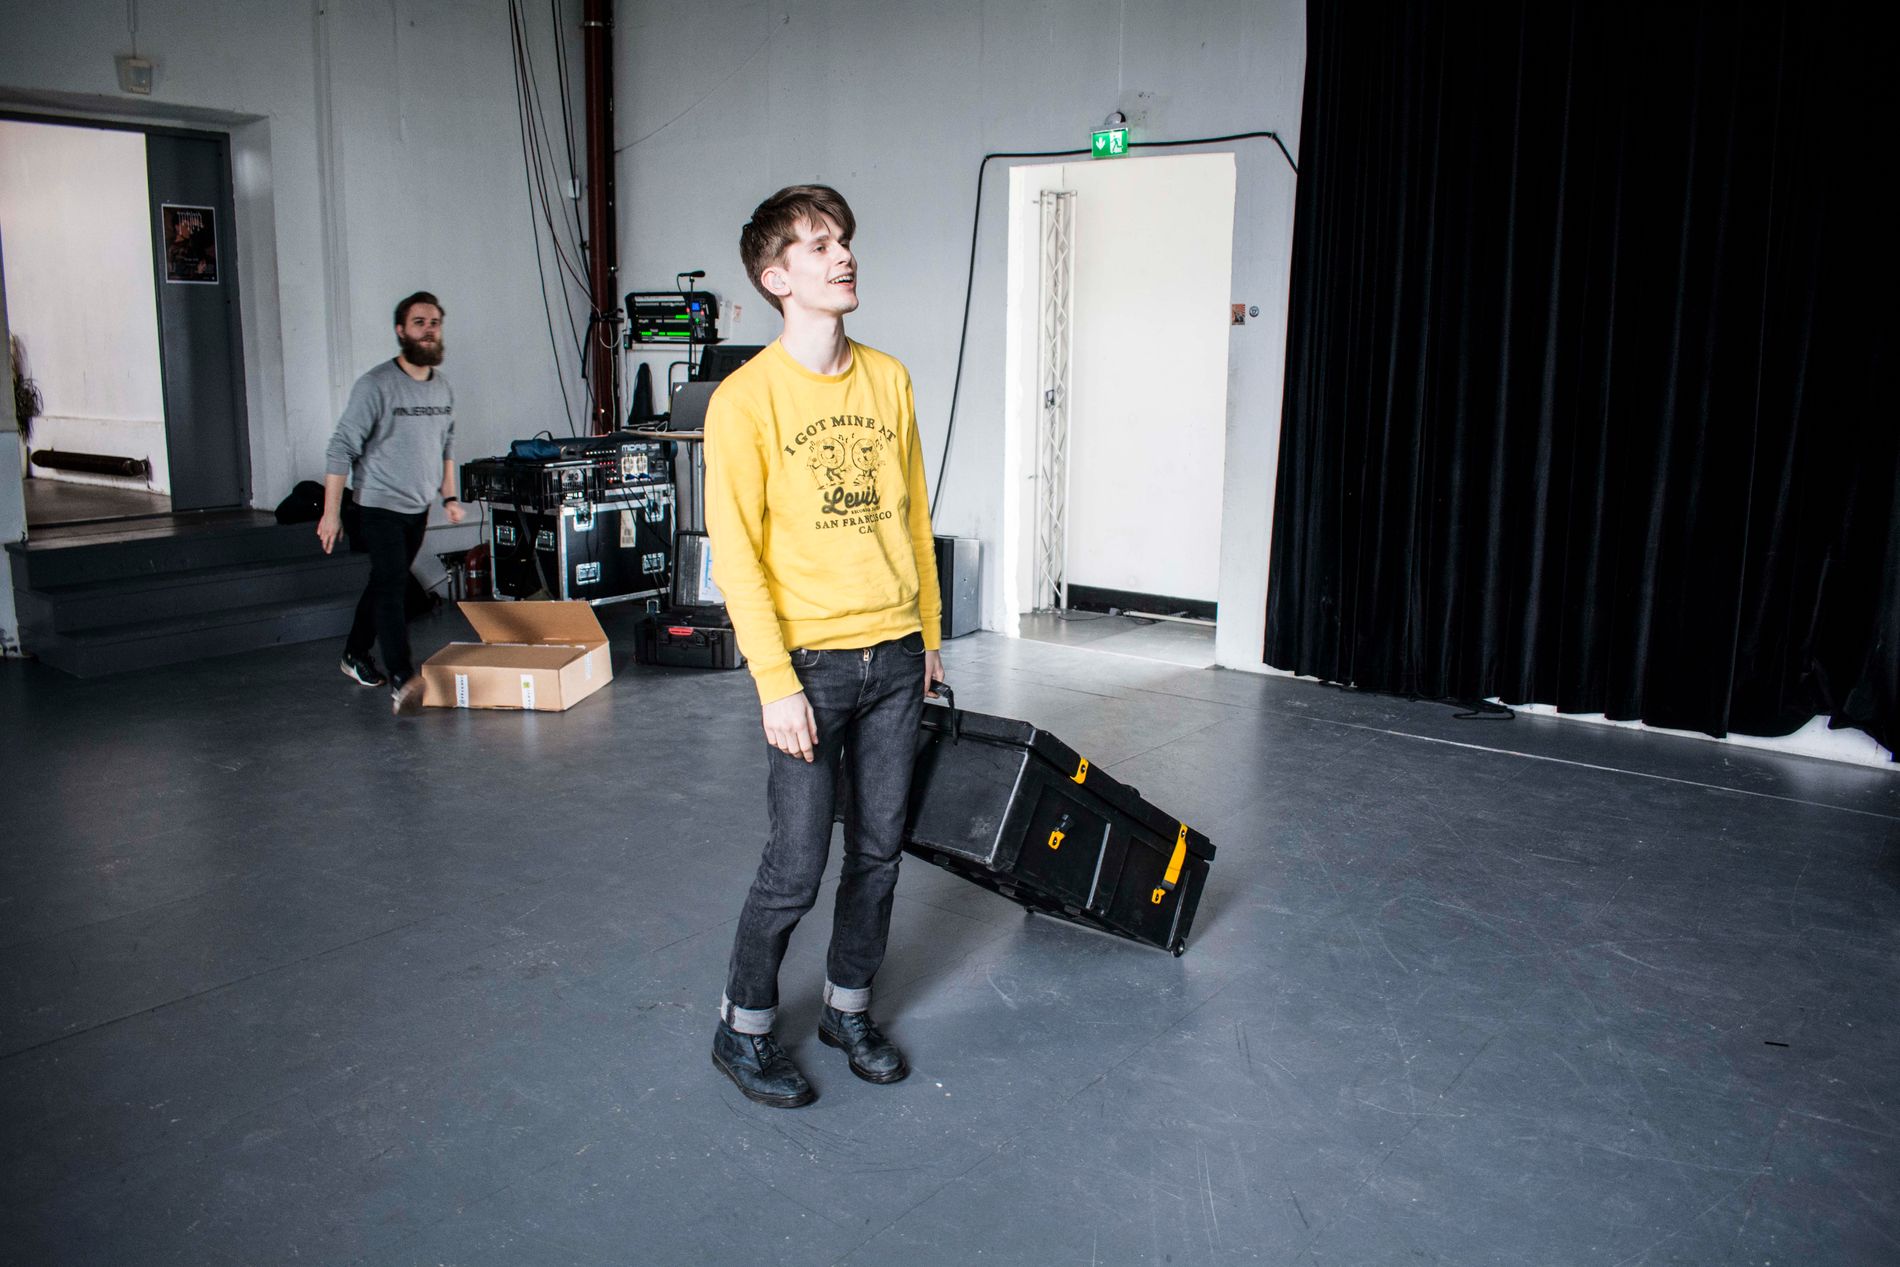 Tor-Arne Vikingstad viser hvordan denne kofferten skal trilles, etter å ha etterlignet Lokøy, som alltid drasser den med hjulene opp. – Poenget med å spille i et band er jævlig intern humor, sier trommis Wiencke.